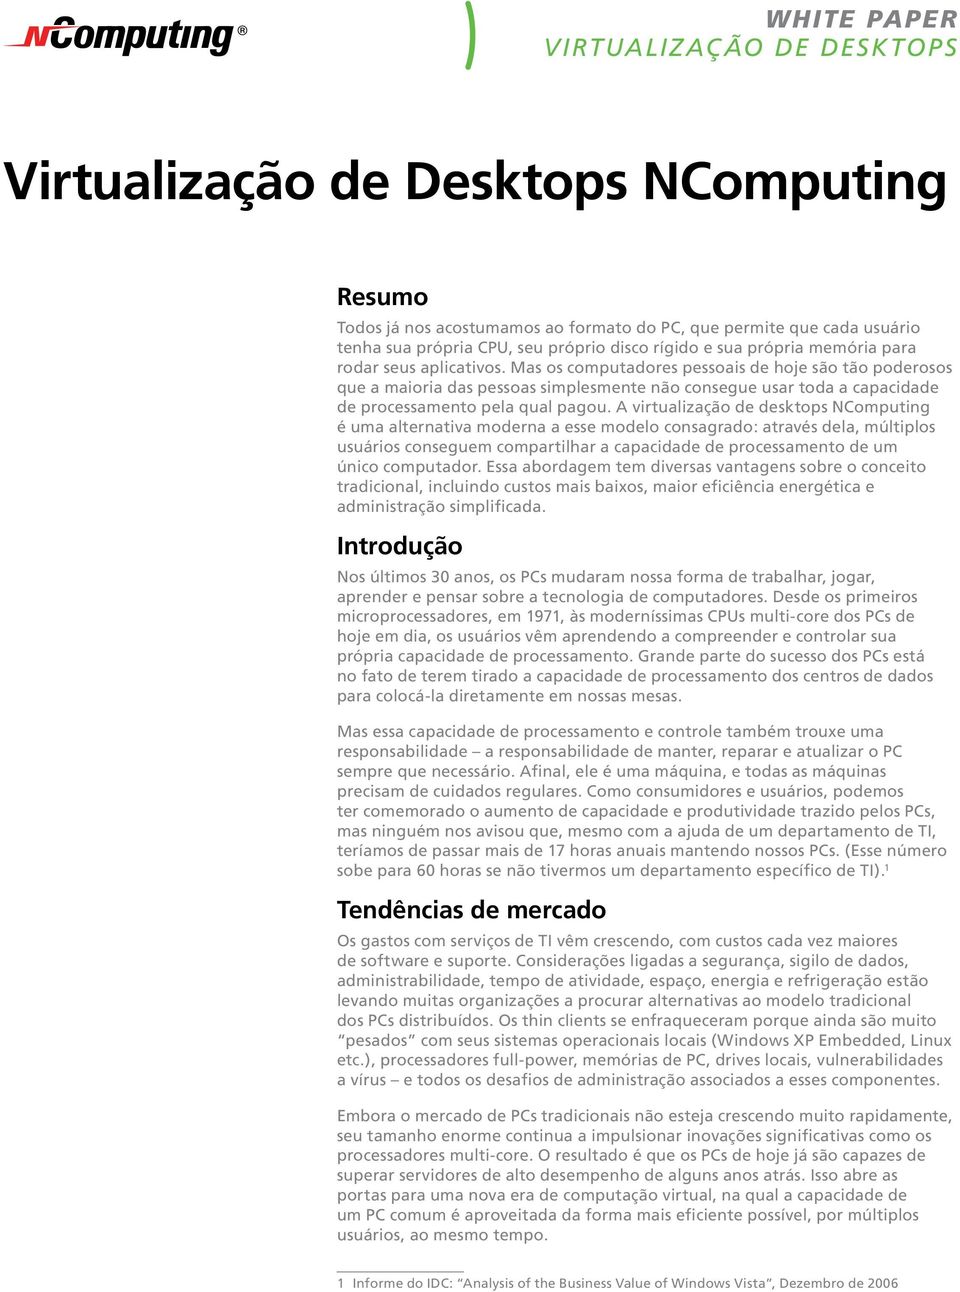 A virtualização de desktops NComputing é uma alternativa moderna a esse modelo consagrado: através dela, múltiplos usuários conseguem compartilhar a capacidade de processamento de um único computador.